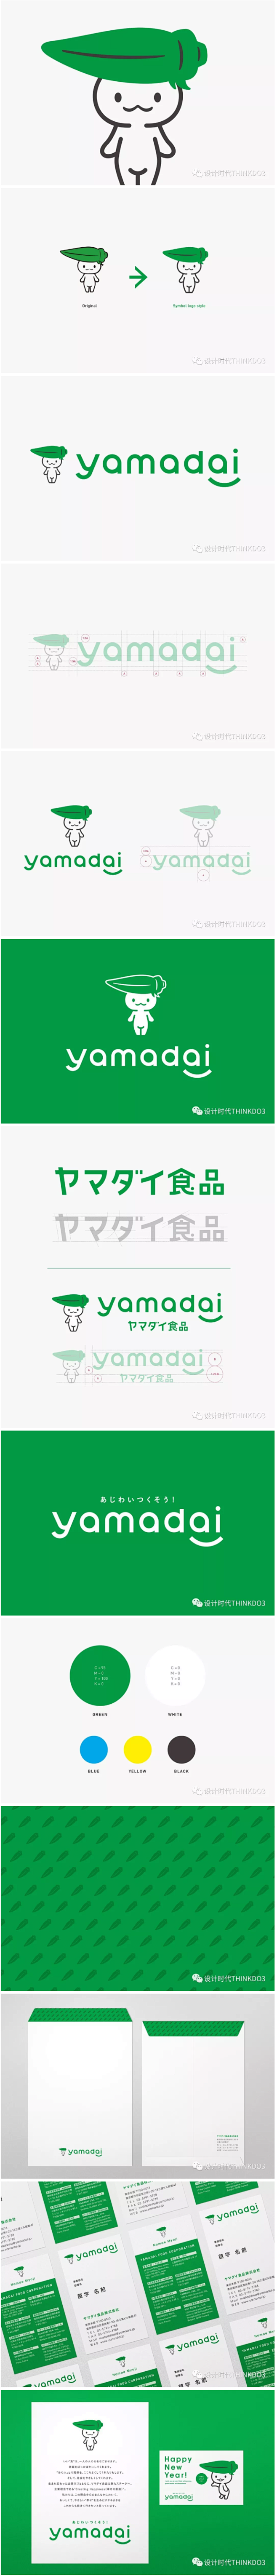 【Yamadai日本食品公司品牌VI视觉...